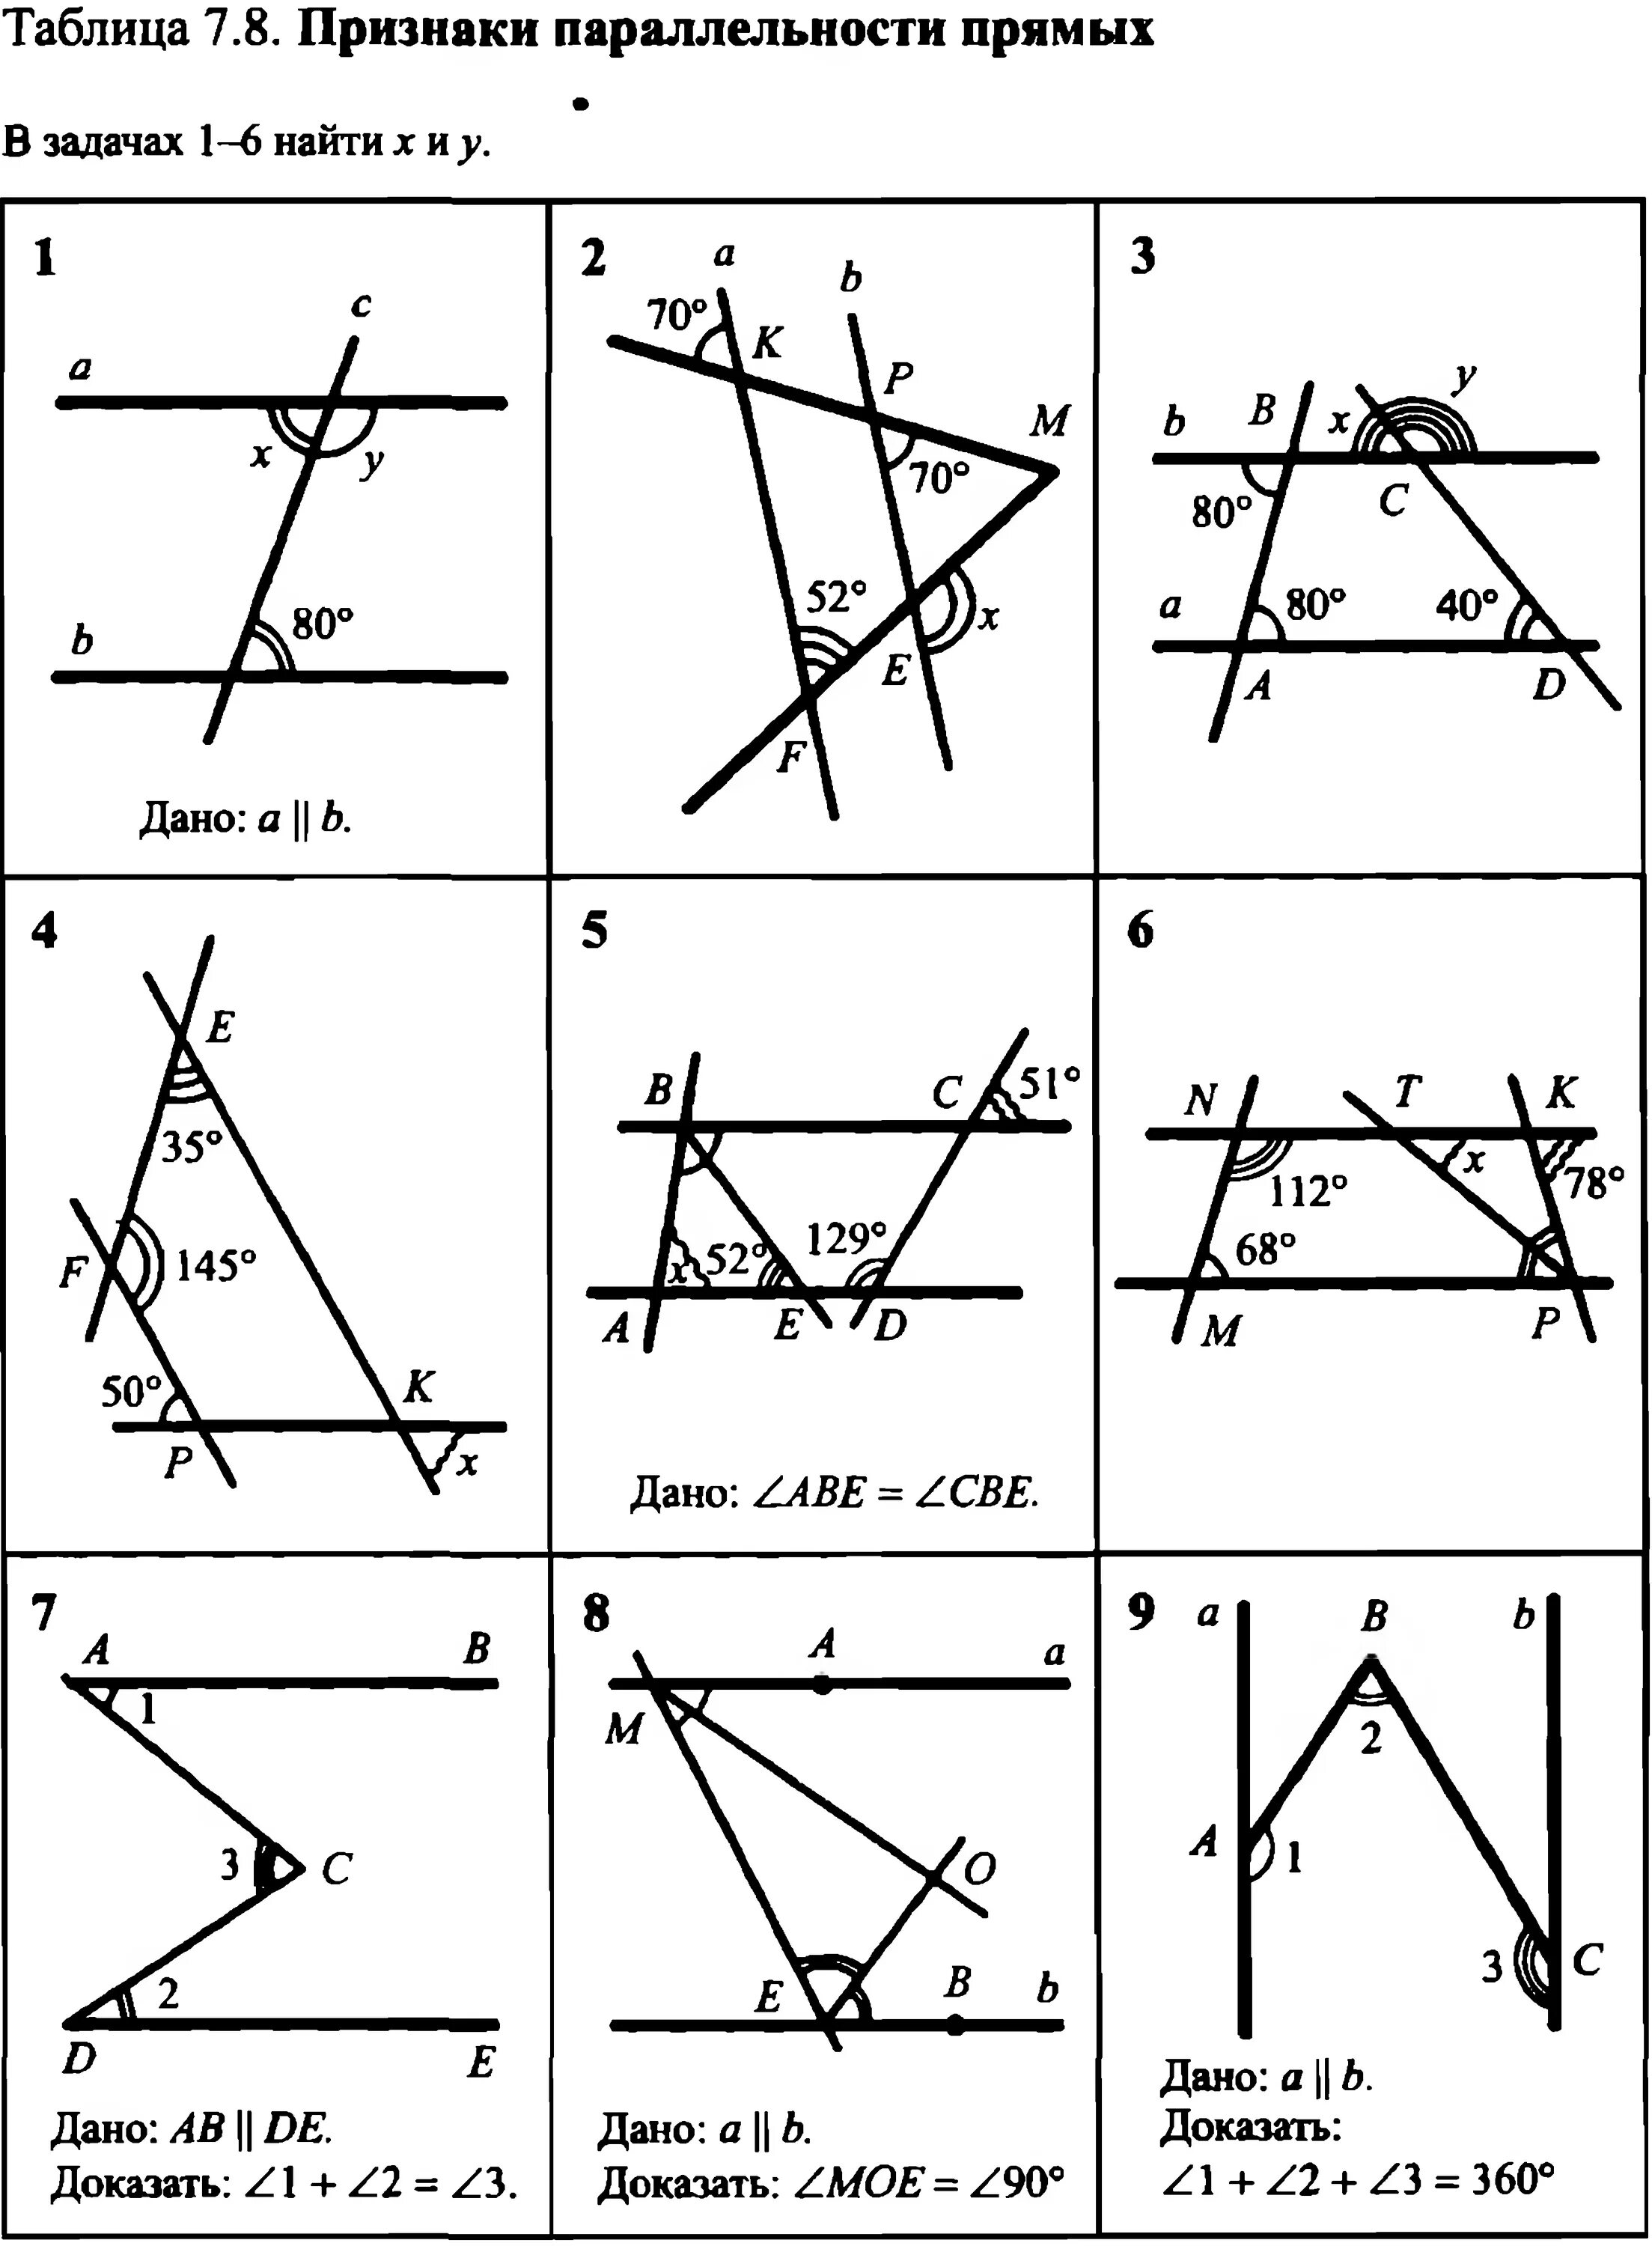 Геометрия т 8. Геометрия Рабинович 7-9 класс задачи на готовых чертежах. Задачи на готовых чертежах 7-9 классы геометрия Рабинович таблица 7.8. Таблица 7.8 по геометрии Рабинович. Параллельность углы задачи.